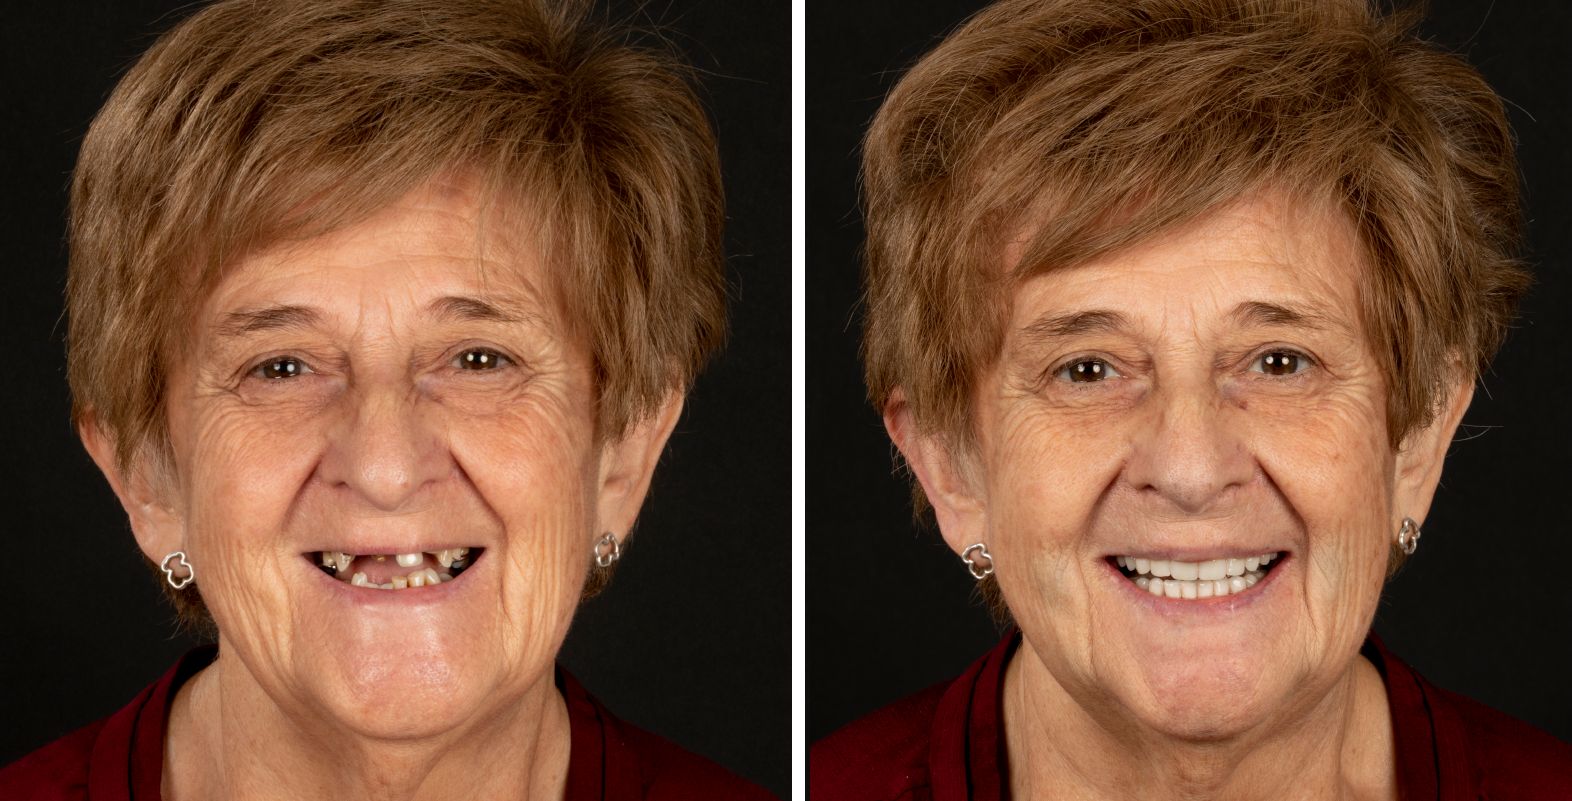 Antes y después de implantes dentales